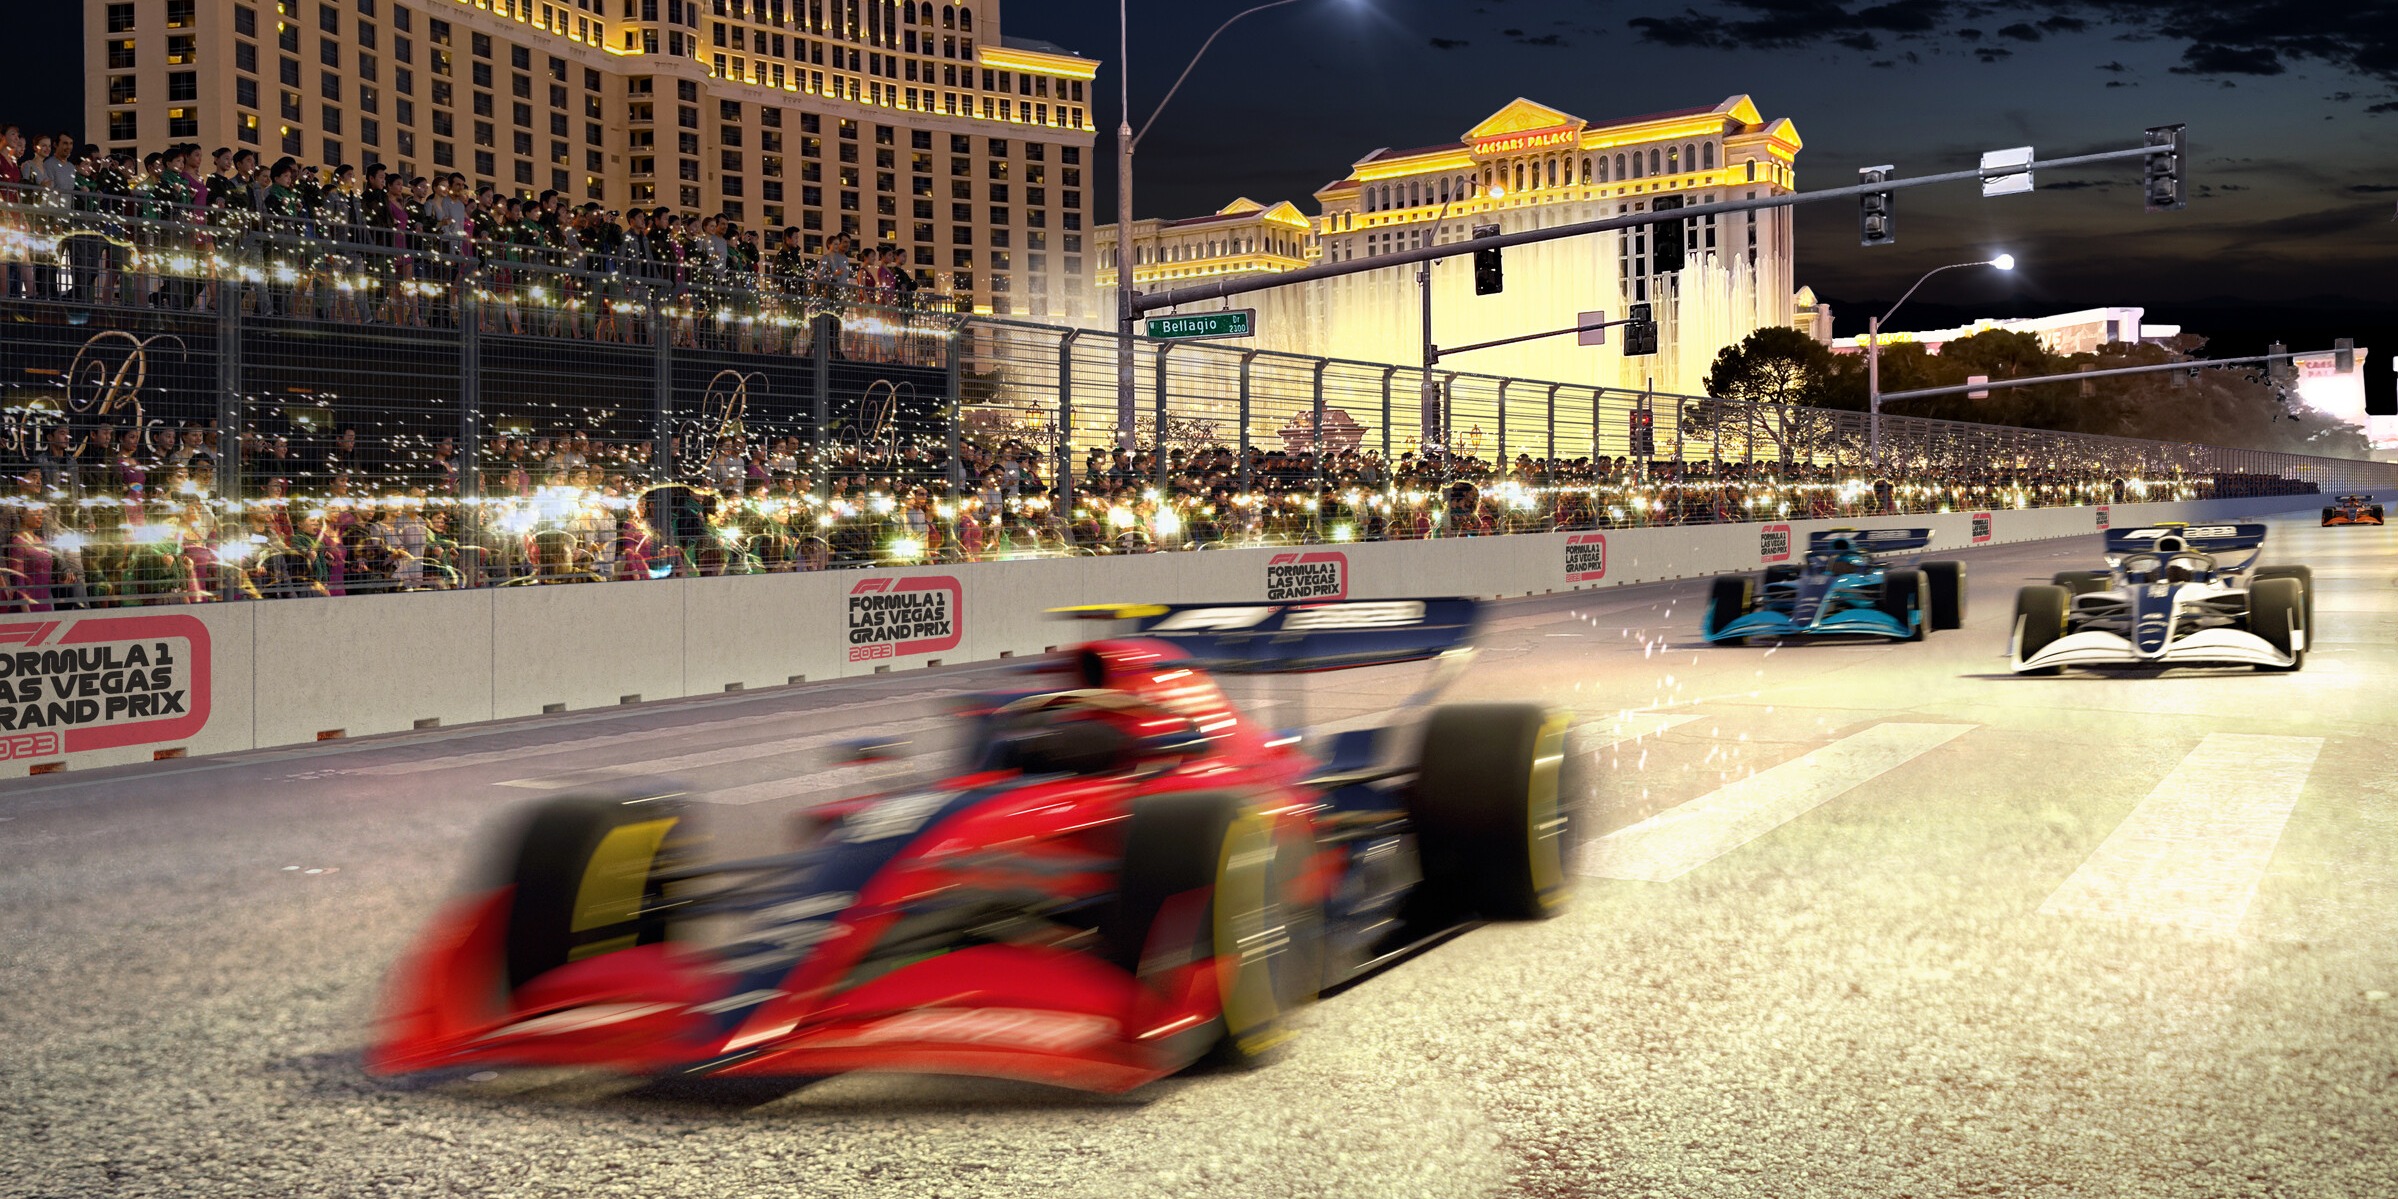 Formel 1 Las Vegas Eine Runde im 360-Grad-Video